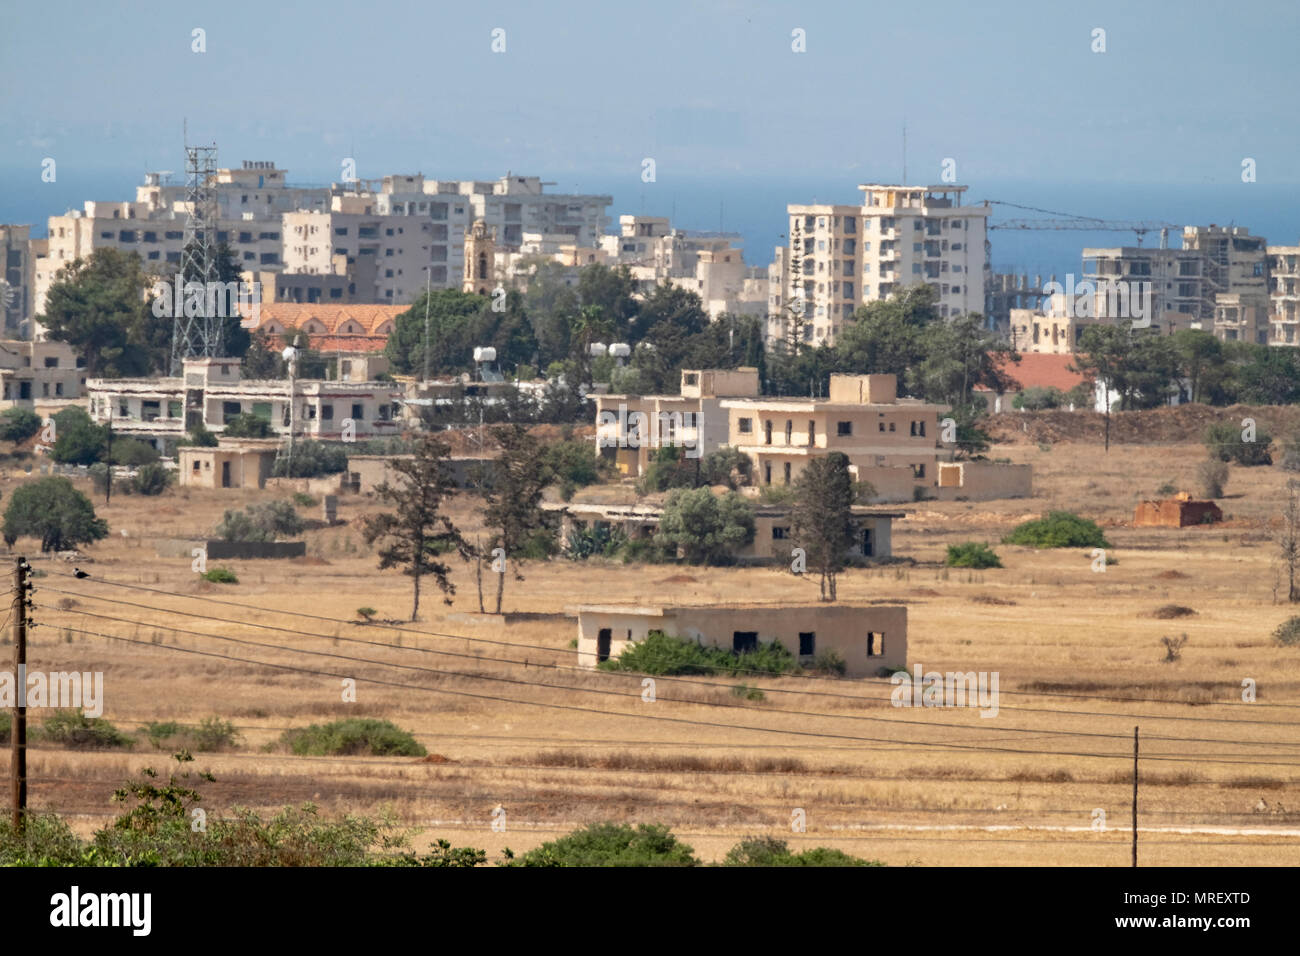 No mans land et zone restreinte de la zone tampon des Nations Unies dans la ligne verte divisant le nord et le sud de Chypre à Famagouste Banque D'Images